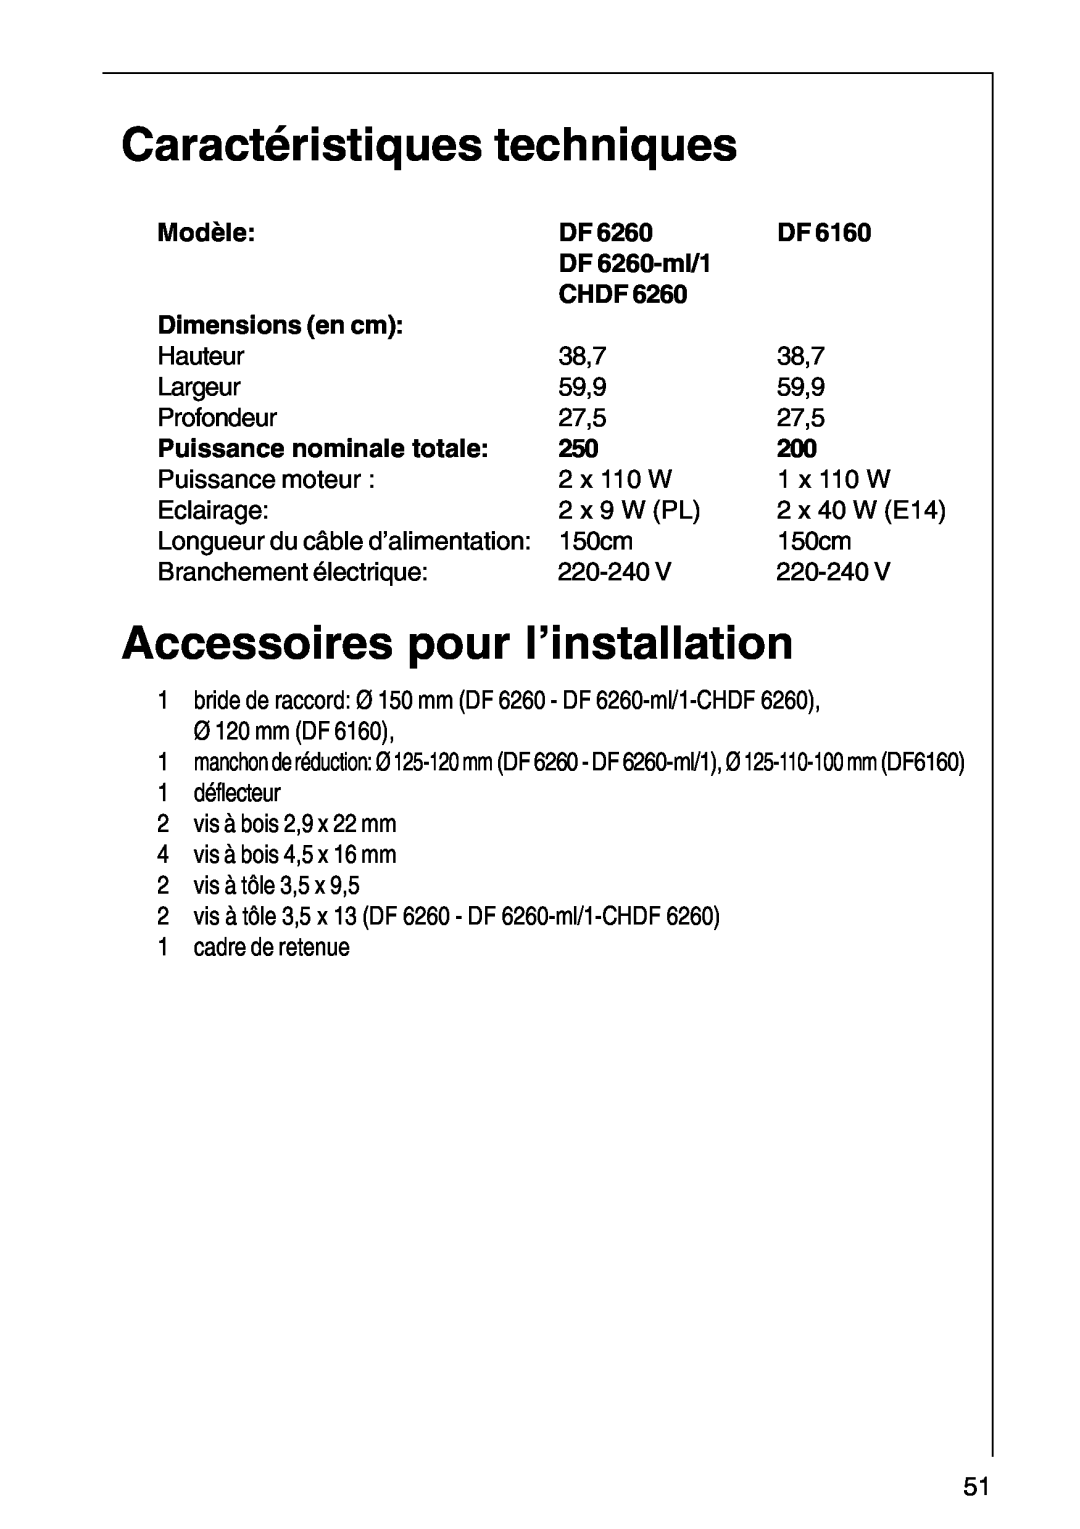 AEG DF6260-ML/1 Caractéristiques techniques, Accessoires pour l’installation, Modèle, Dimensions en cm, DF 6260-ml/1, Chdf 